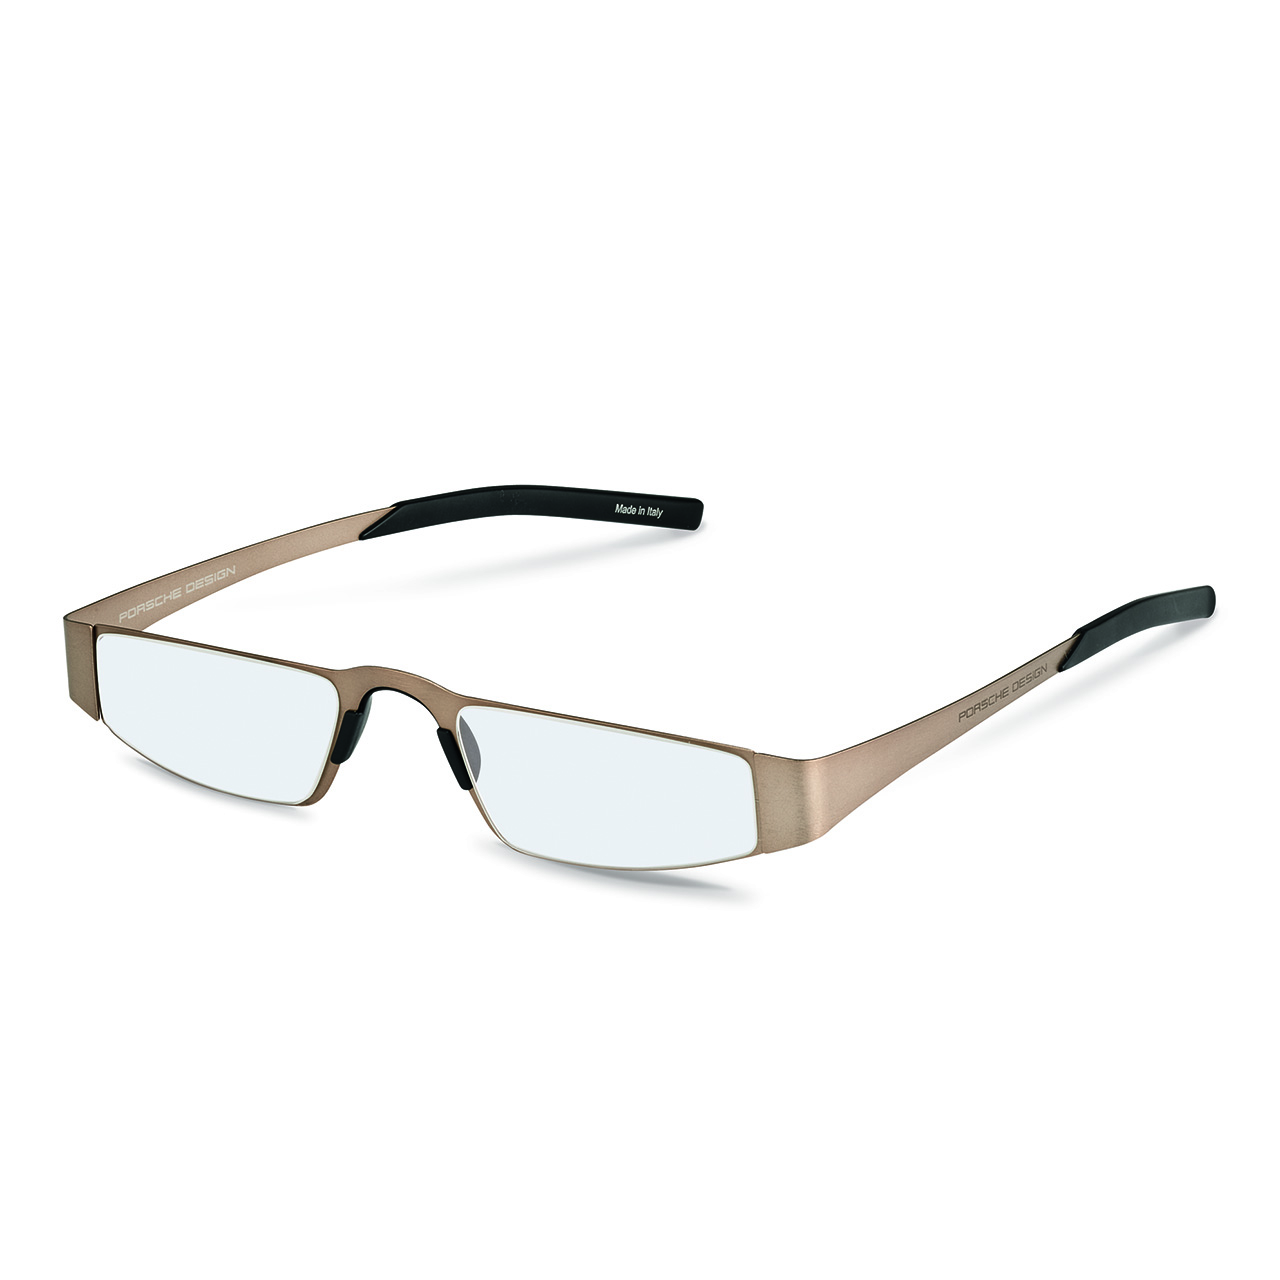 Correction Frames P´8251 - Titanium-Frame Glasses - High-Quality 